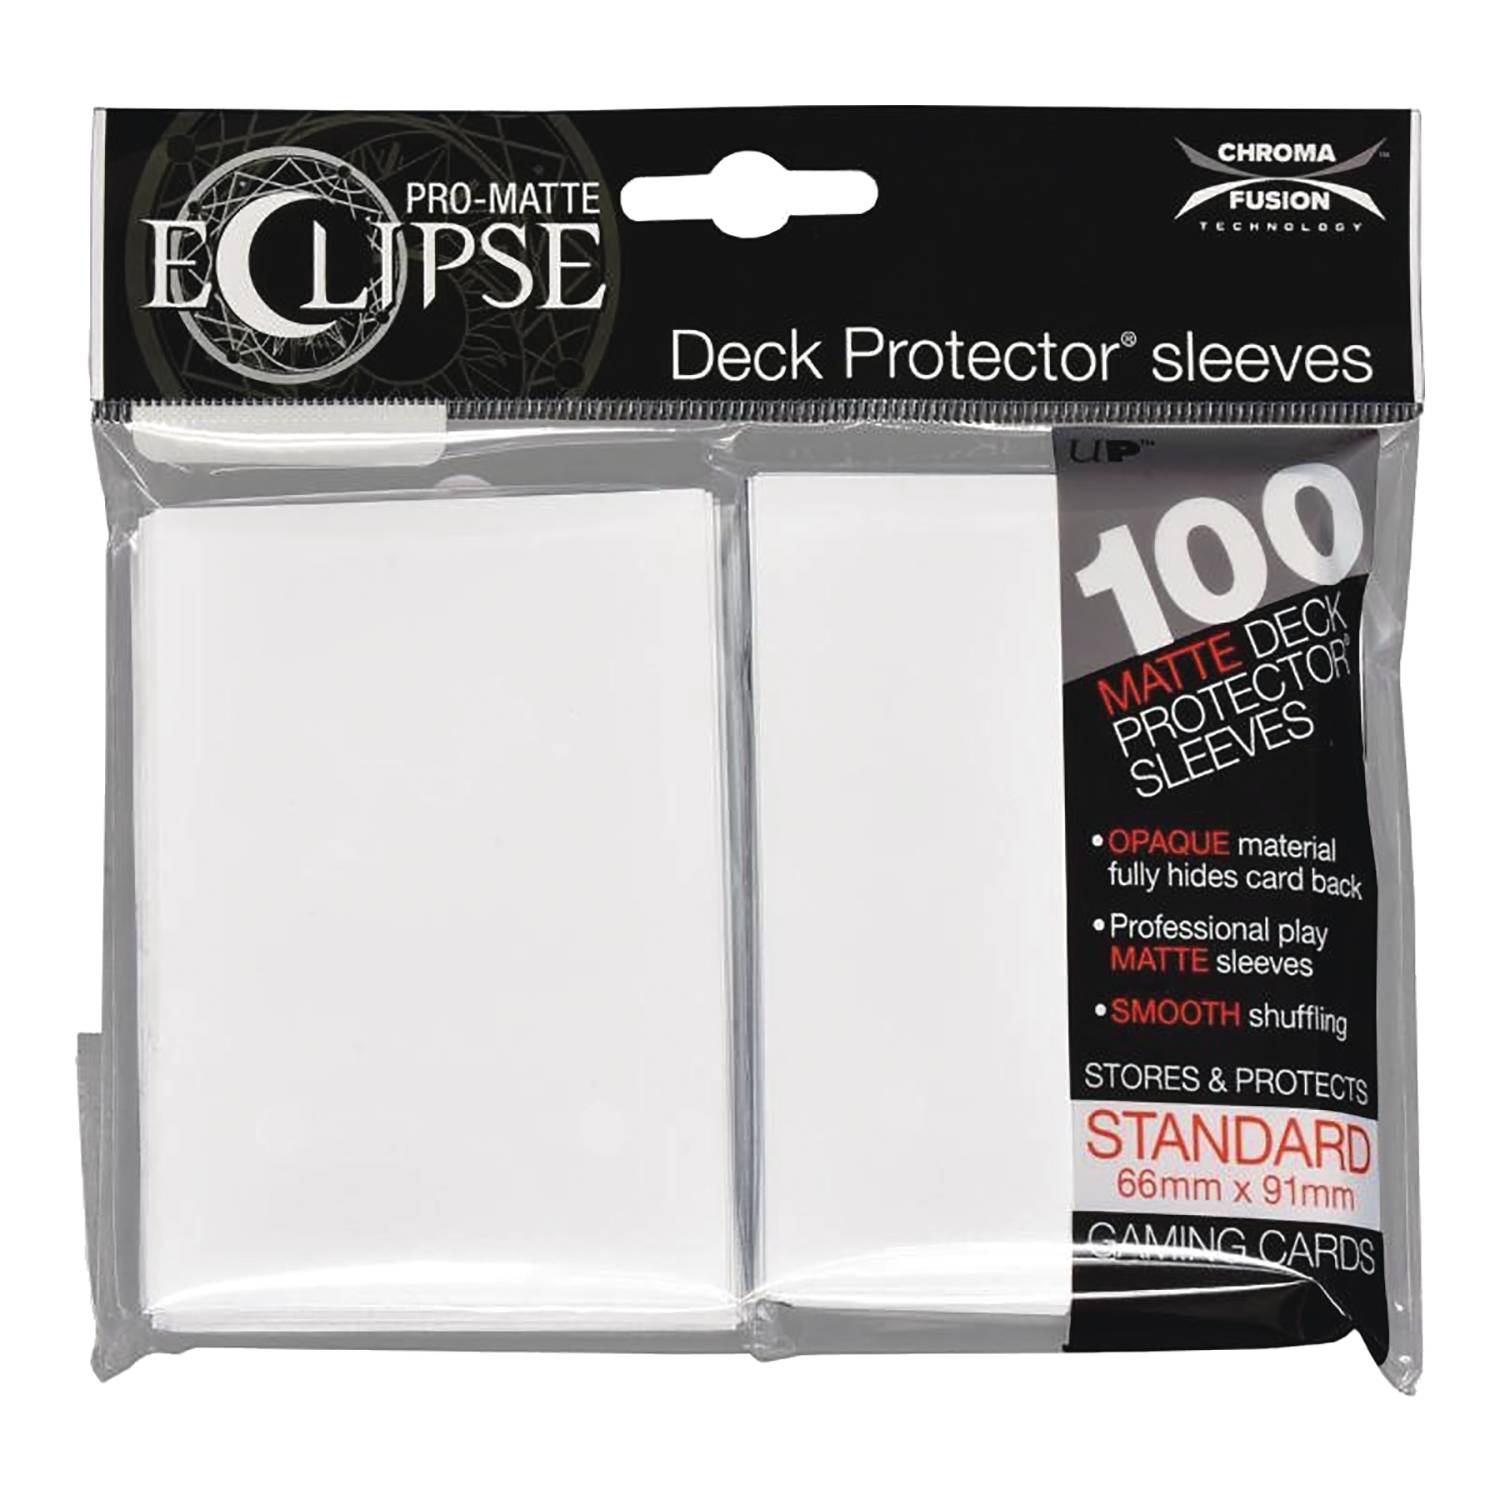 Pro Matte Eclipse Deck Protectors Sleeve 100ct Artic White